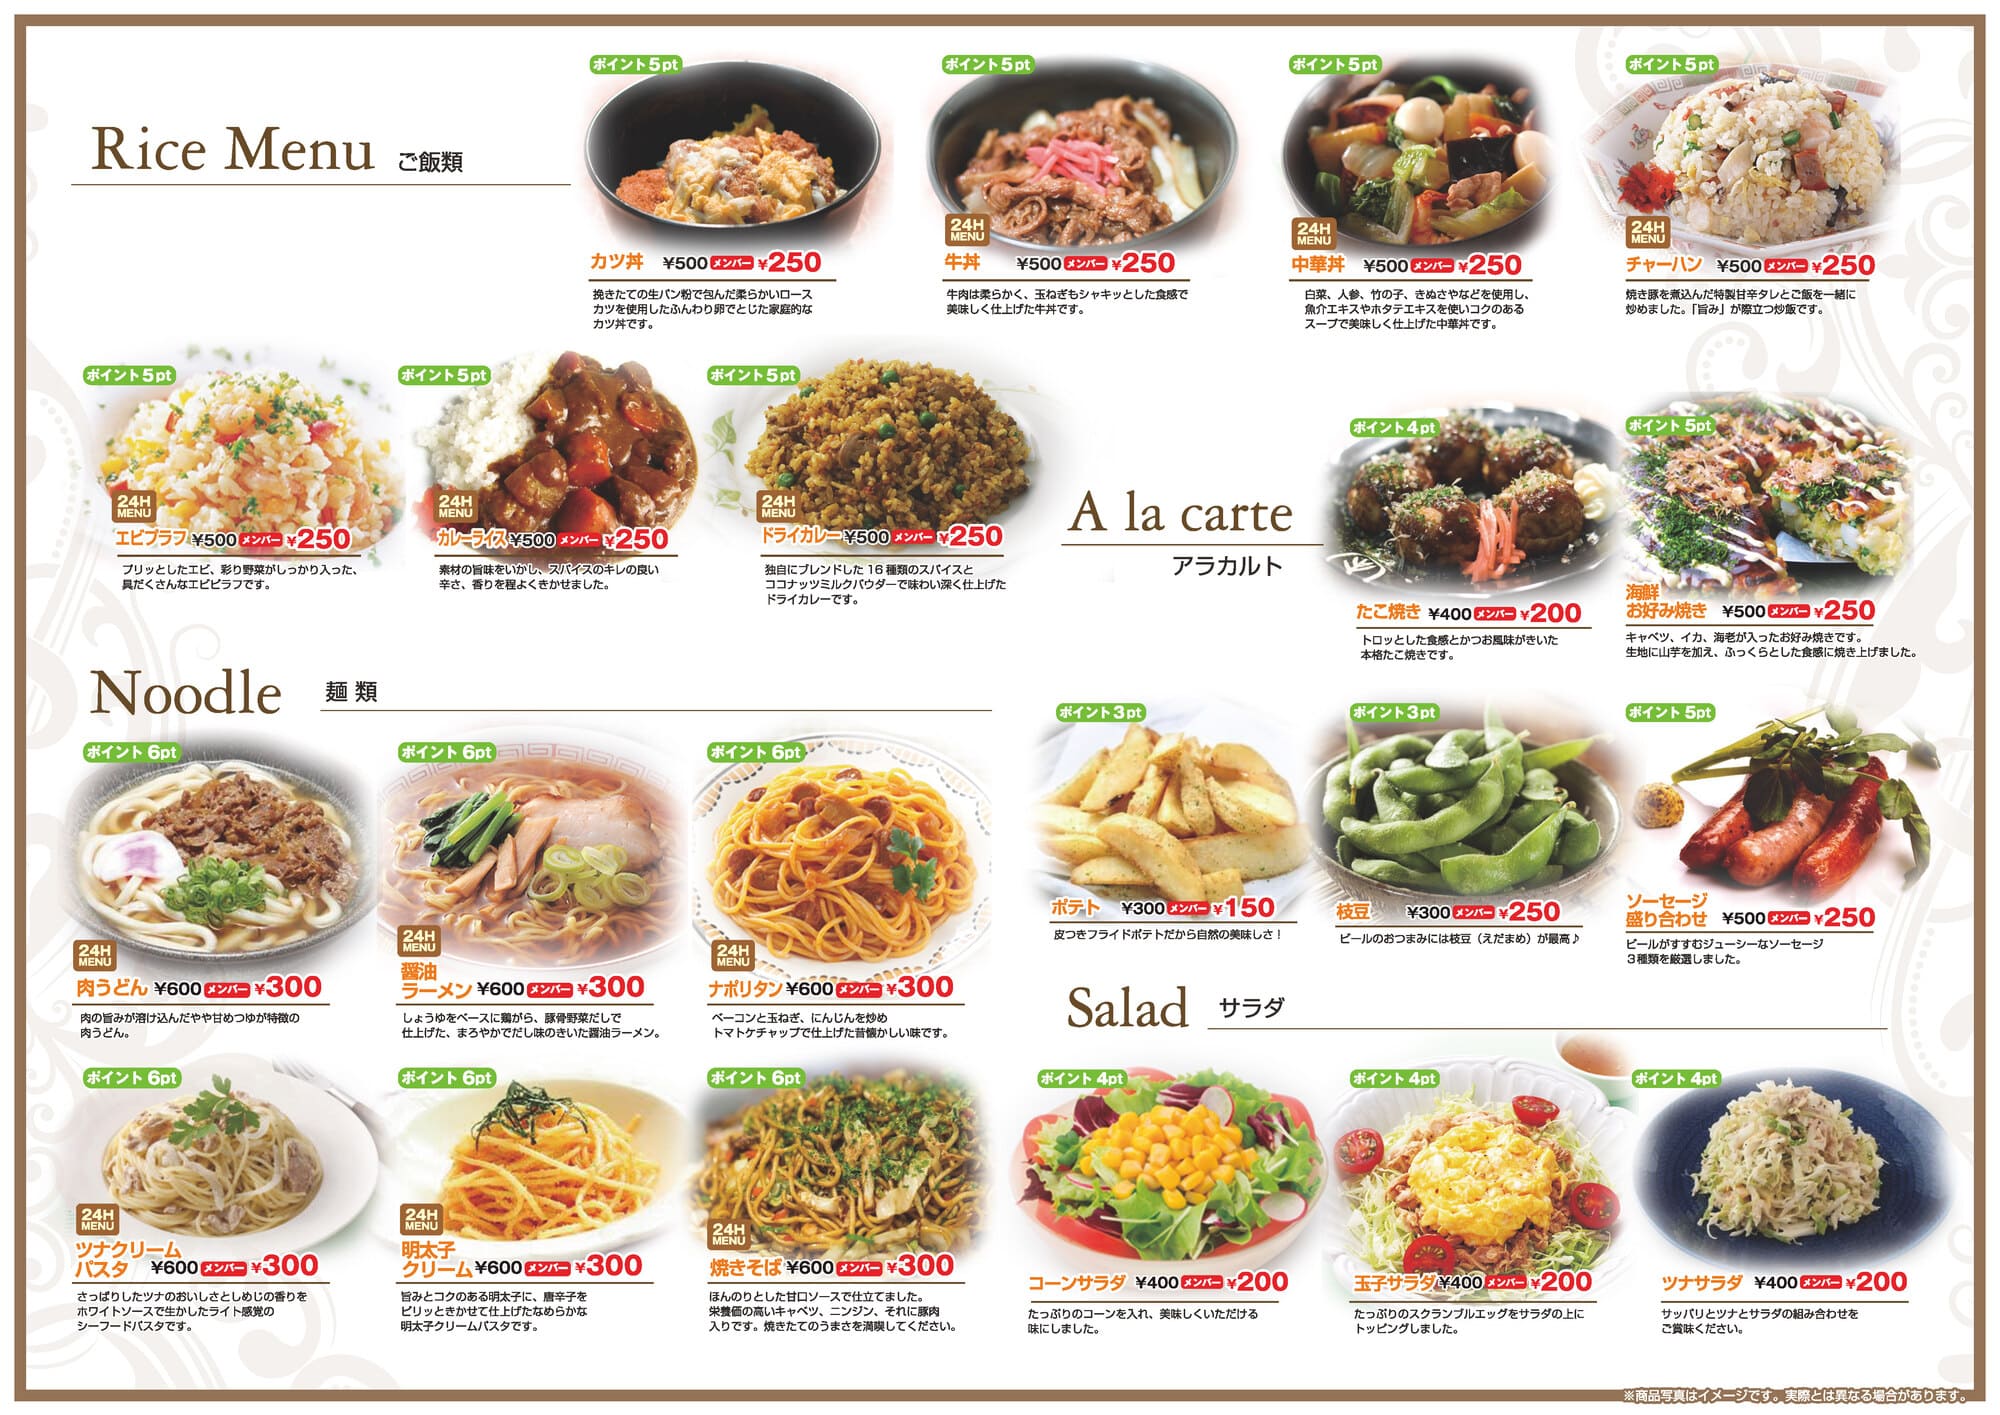 ご飯・アラカルト・麺類・サラダのメニュー表